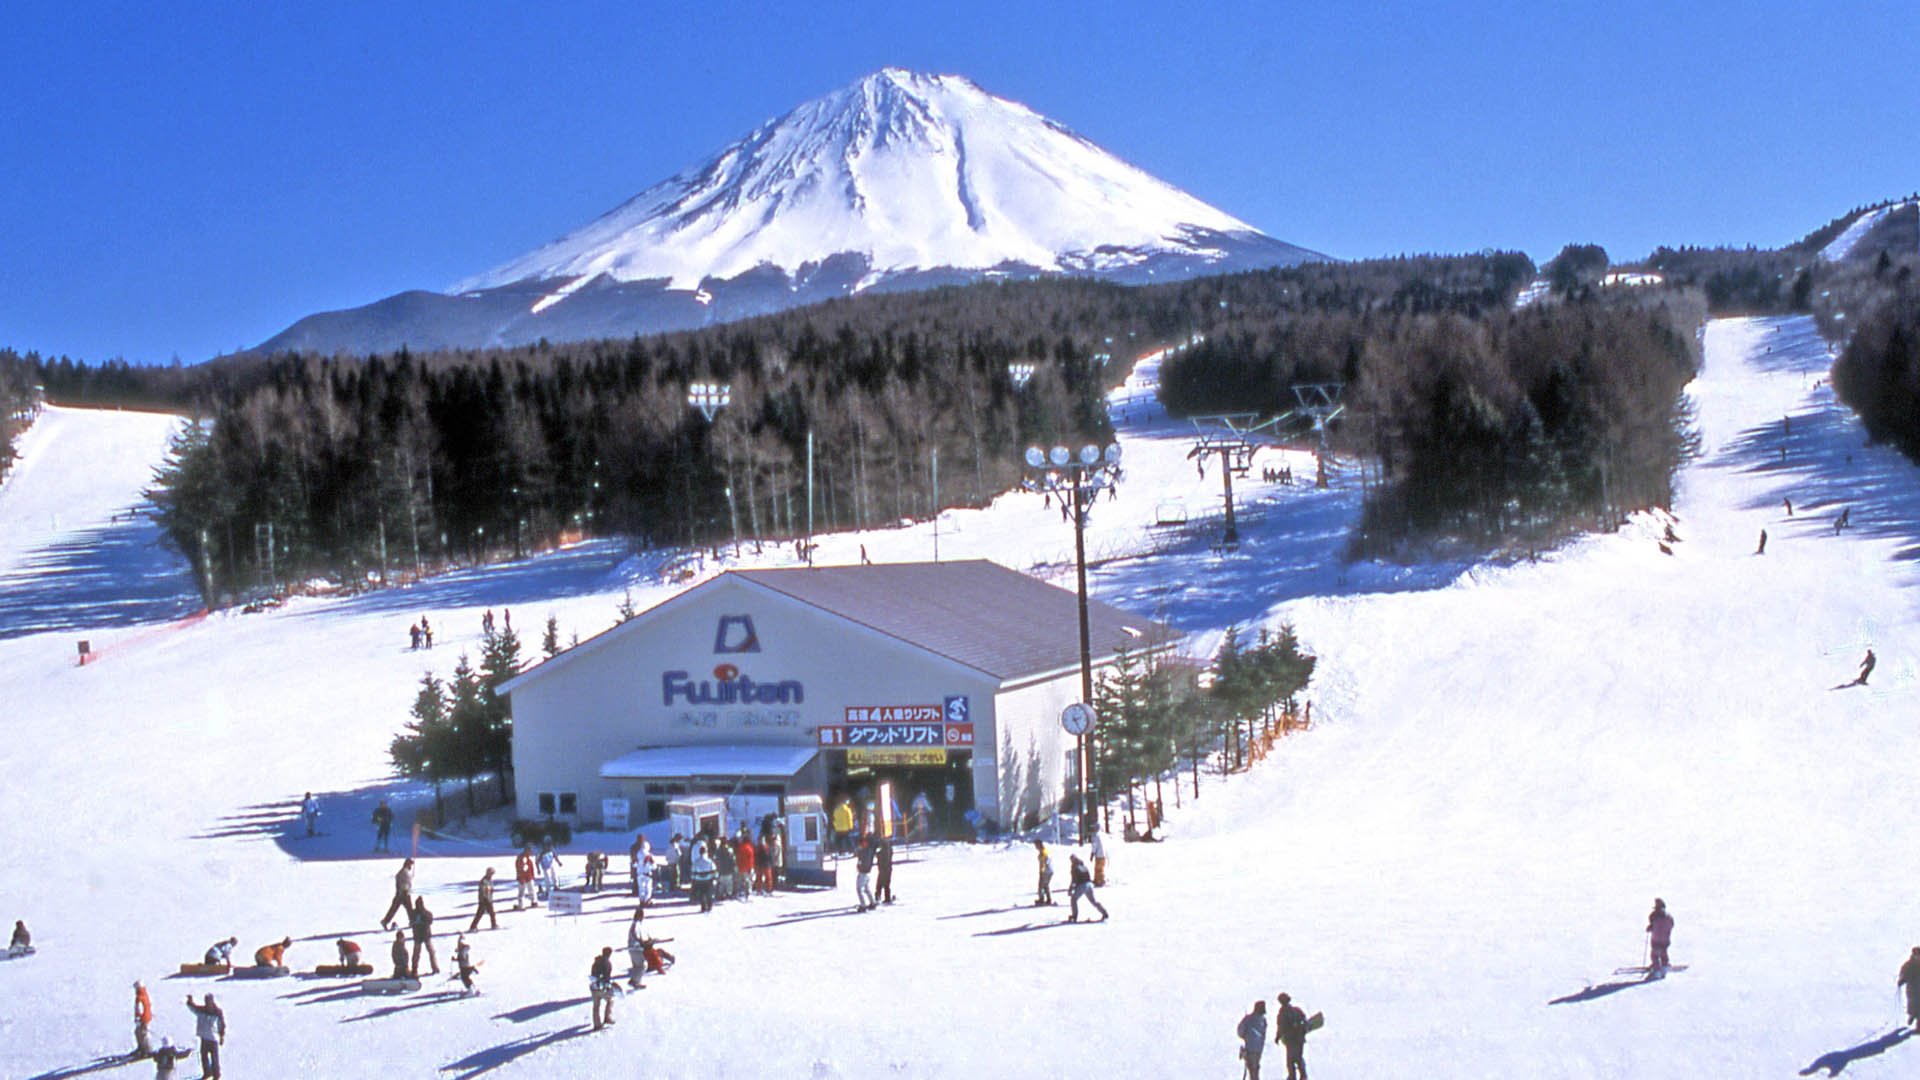 fujiten snow resort tour package